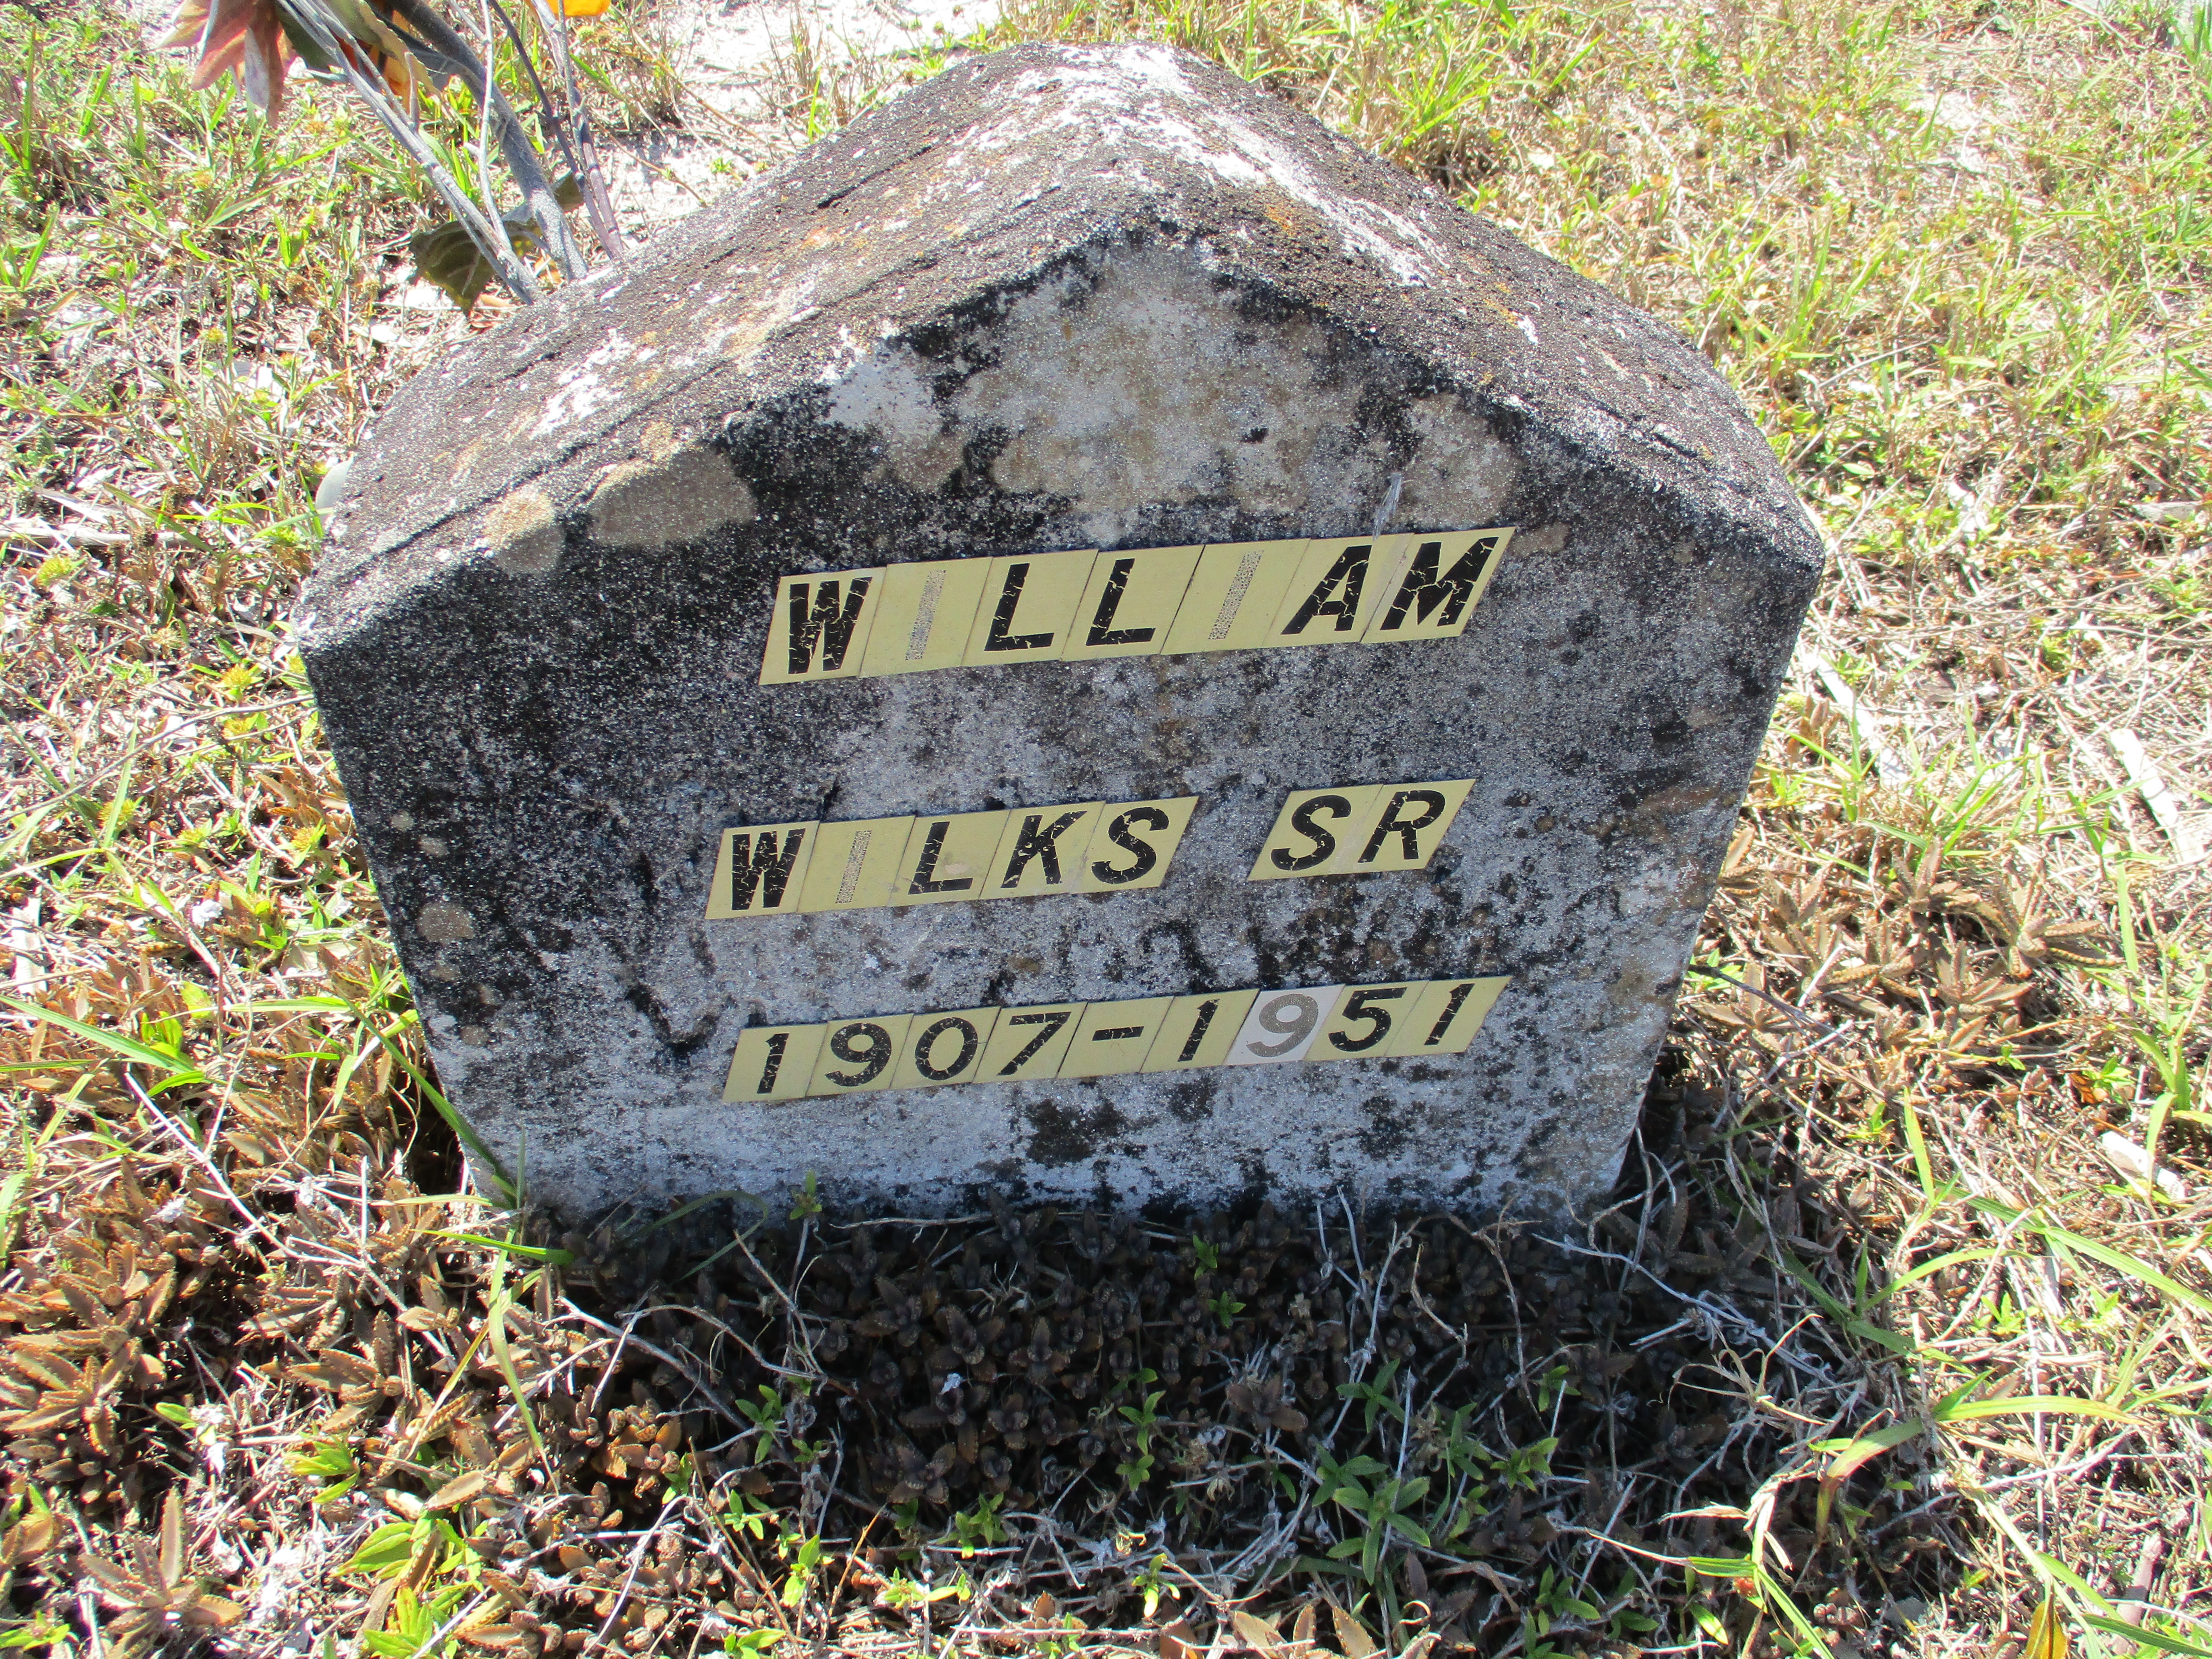 William Wilks, Sr